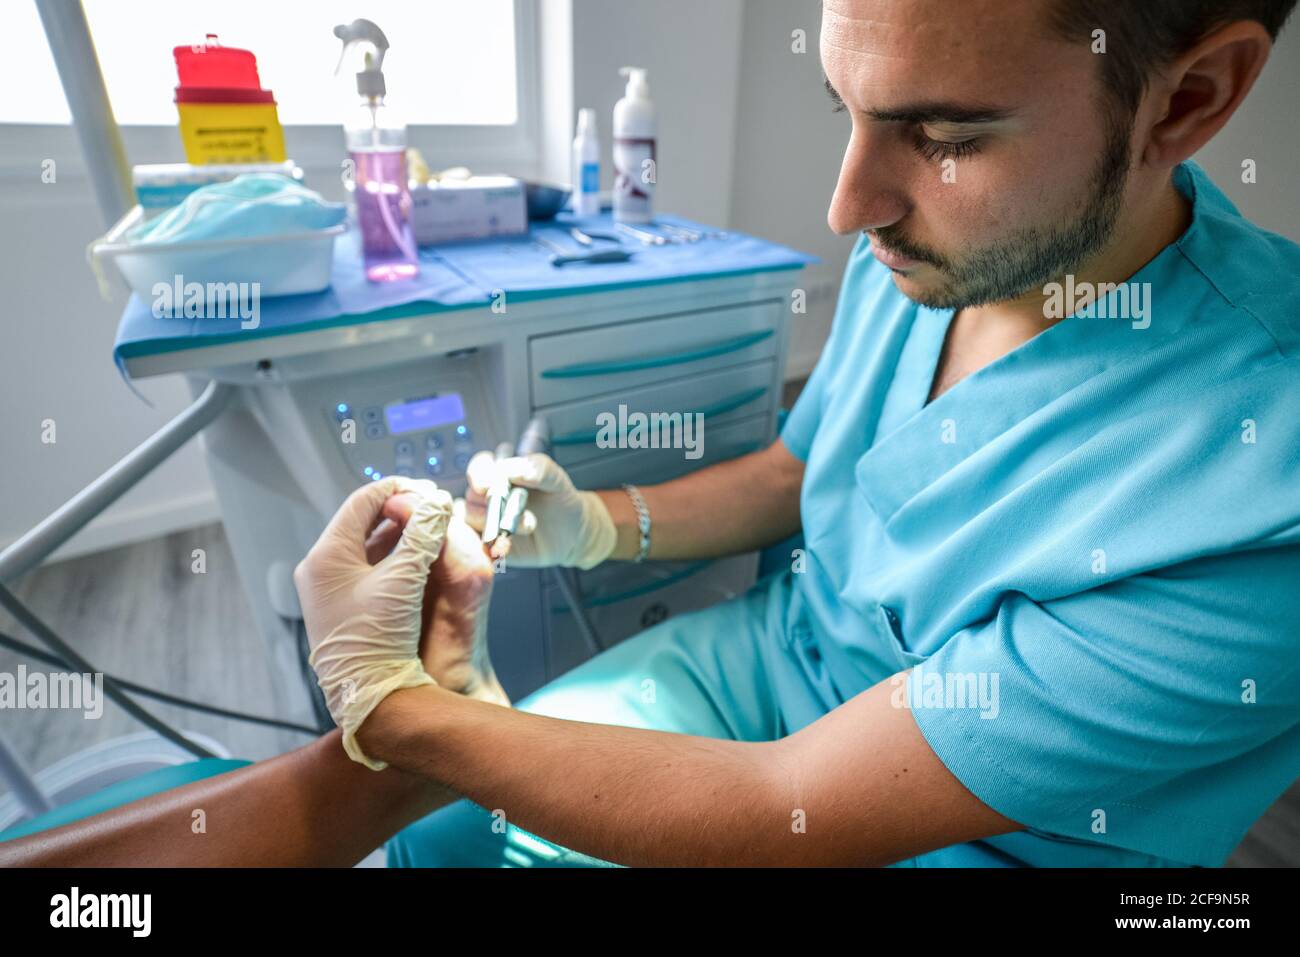 Vue latérale d'un médecin spécialiste qualifié en uniforme bleu et gants de protection utilisant un équipement professionnel lors de l'exécution de la procédure avec le pied du patient Banque D'Images